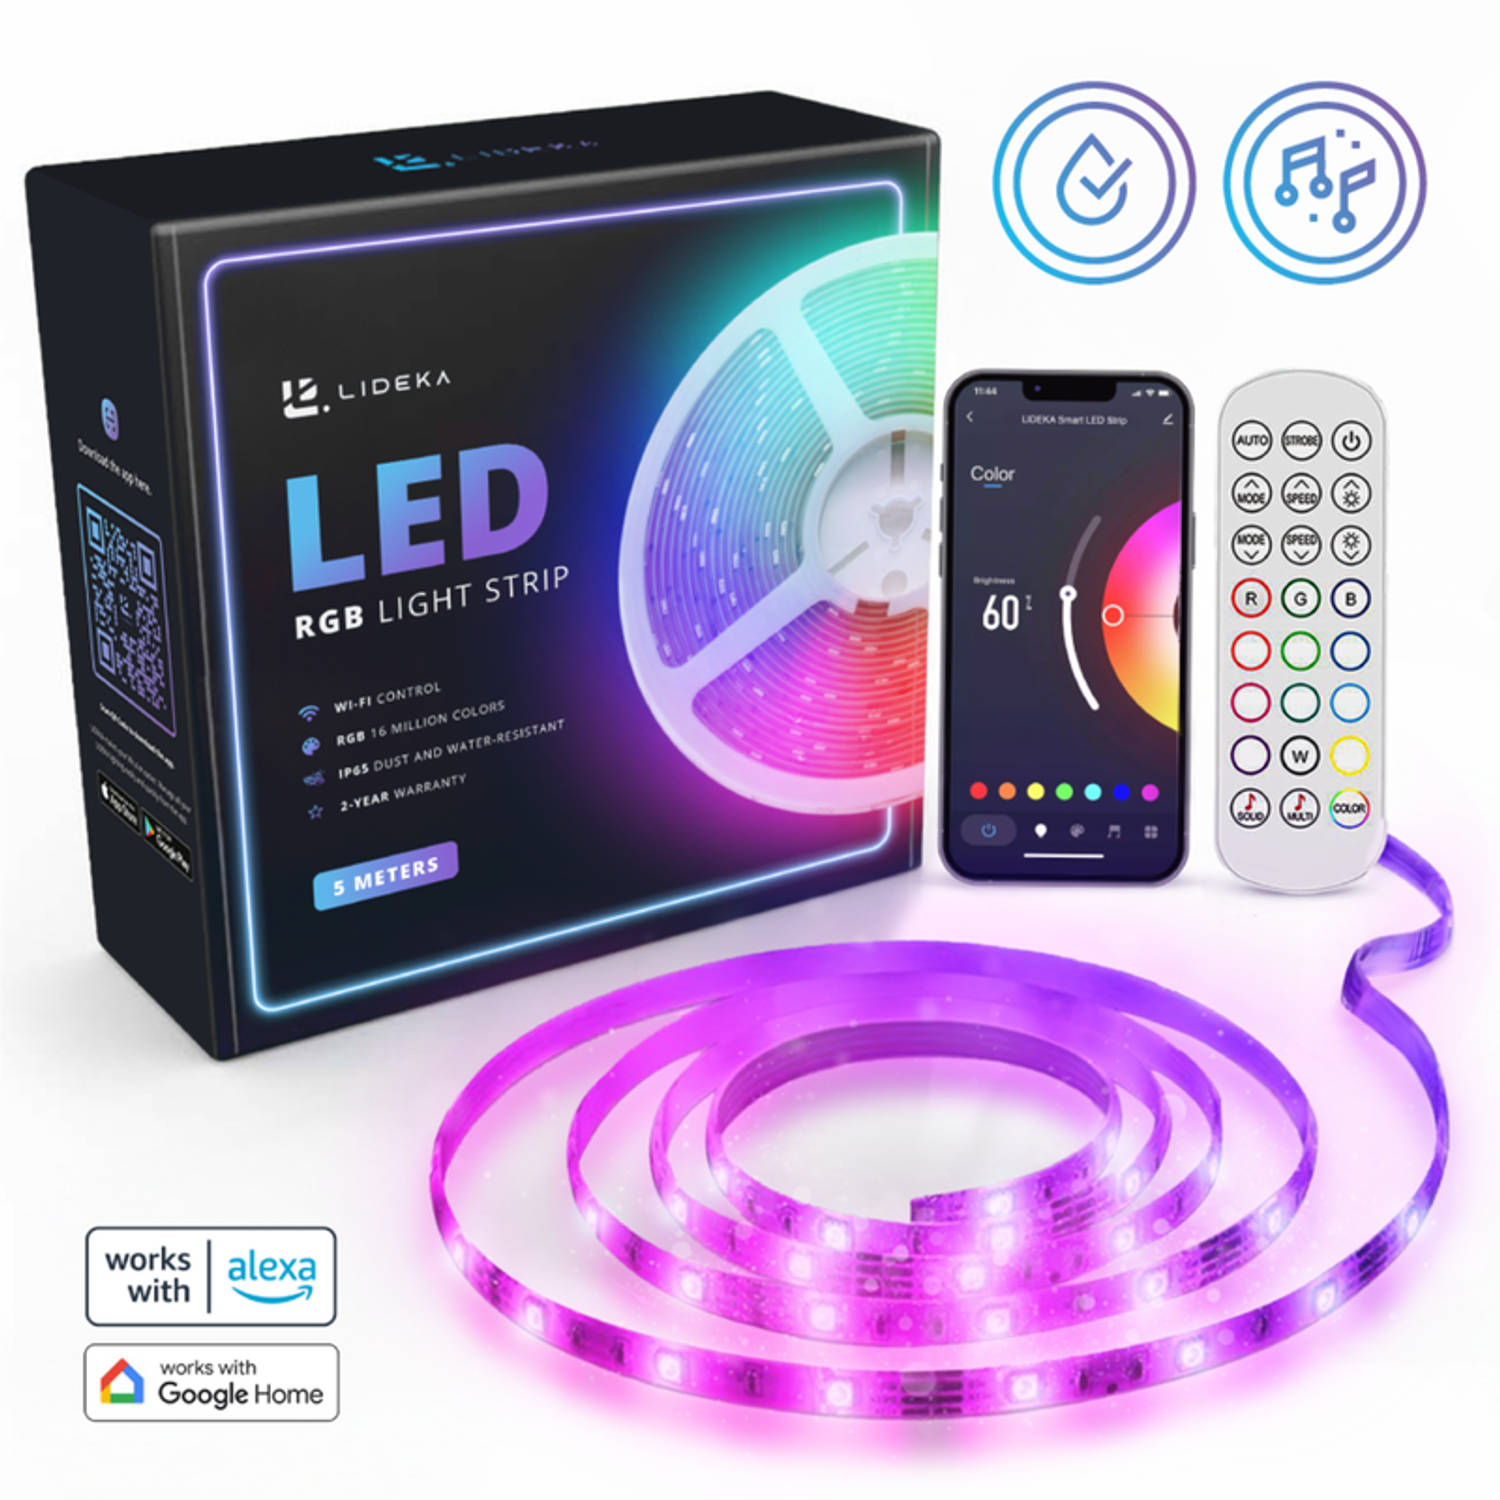 Lideka® Slimme LED Strip van 5 Meter - Hoogste Helderheid - Makkelijke Installatie - Met Muziek Optie - 16 Miljoen Kleuren - 2 Jaar Garantie - Google en Alexa Compatibel - Compleet